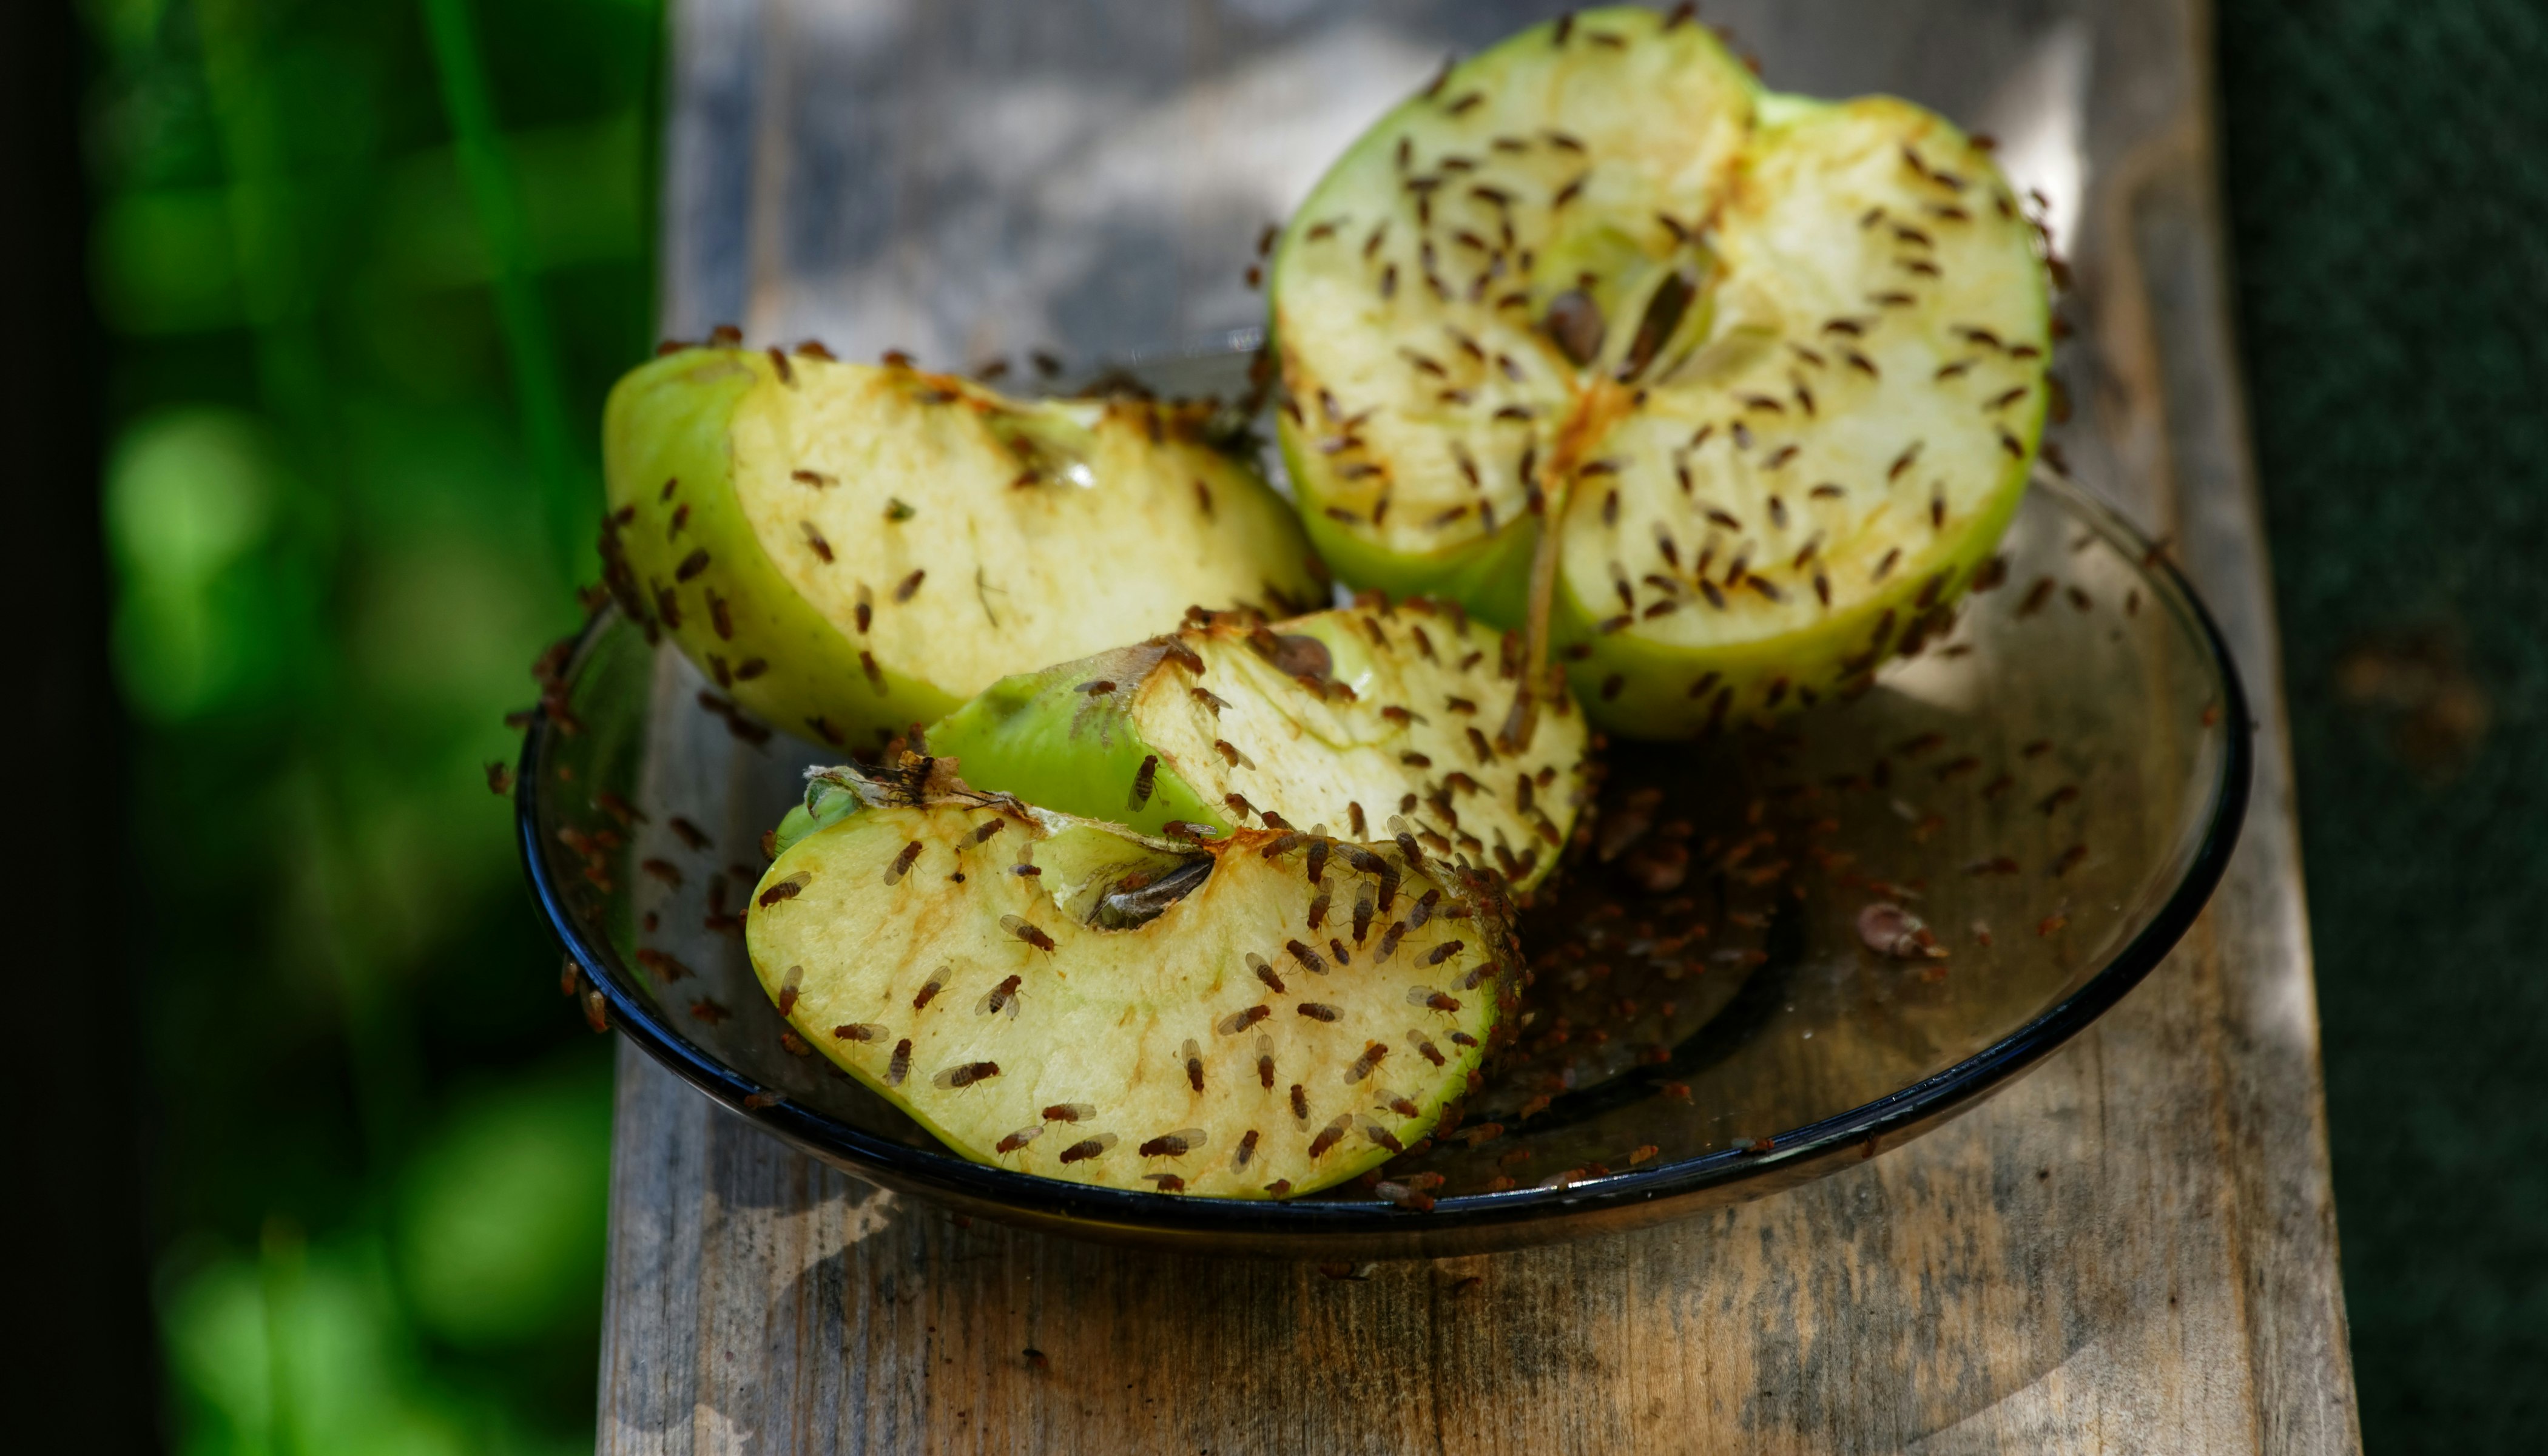 Bananfluer tiltrækkes af frugt og gæret mad